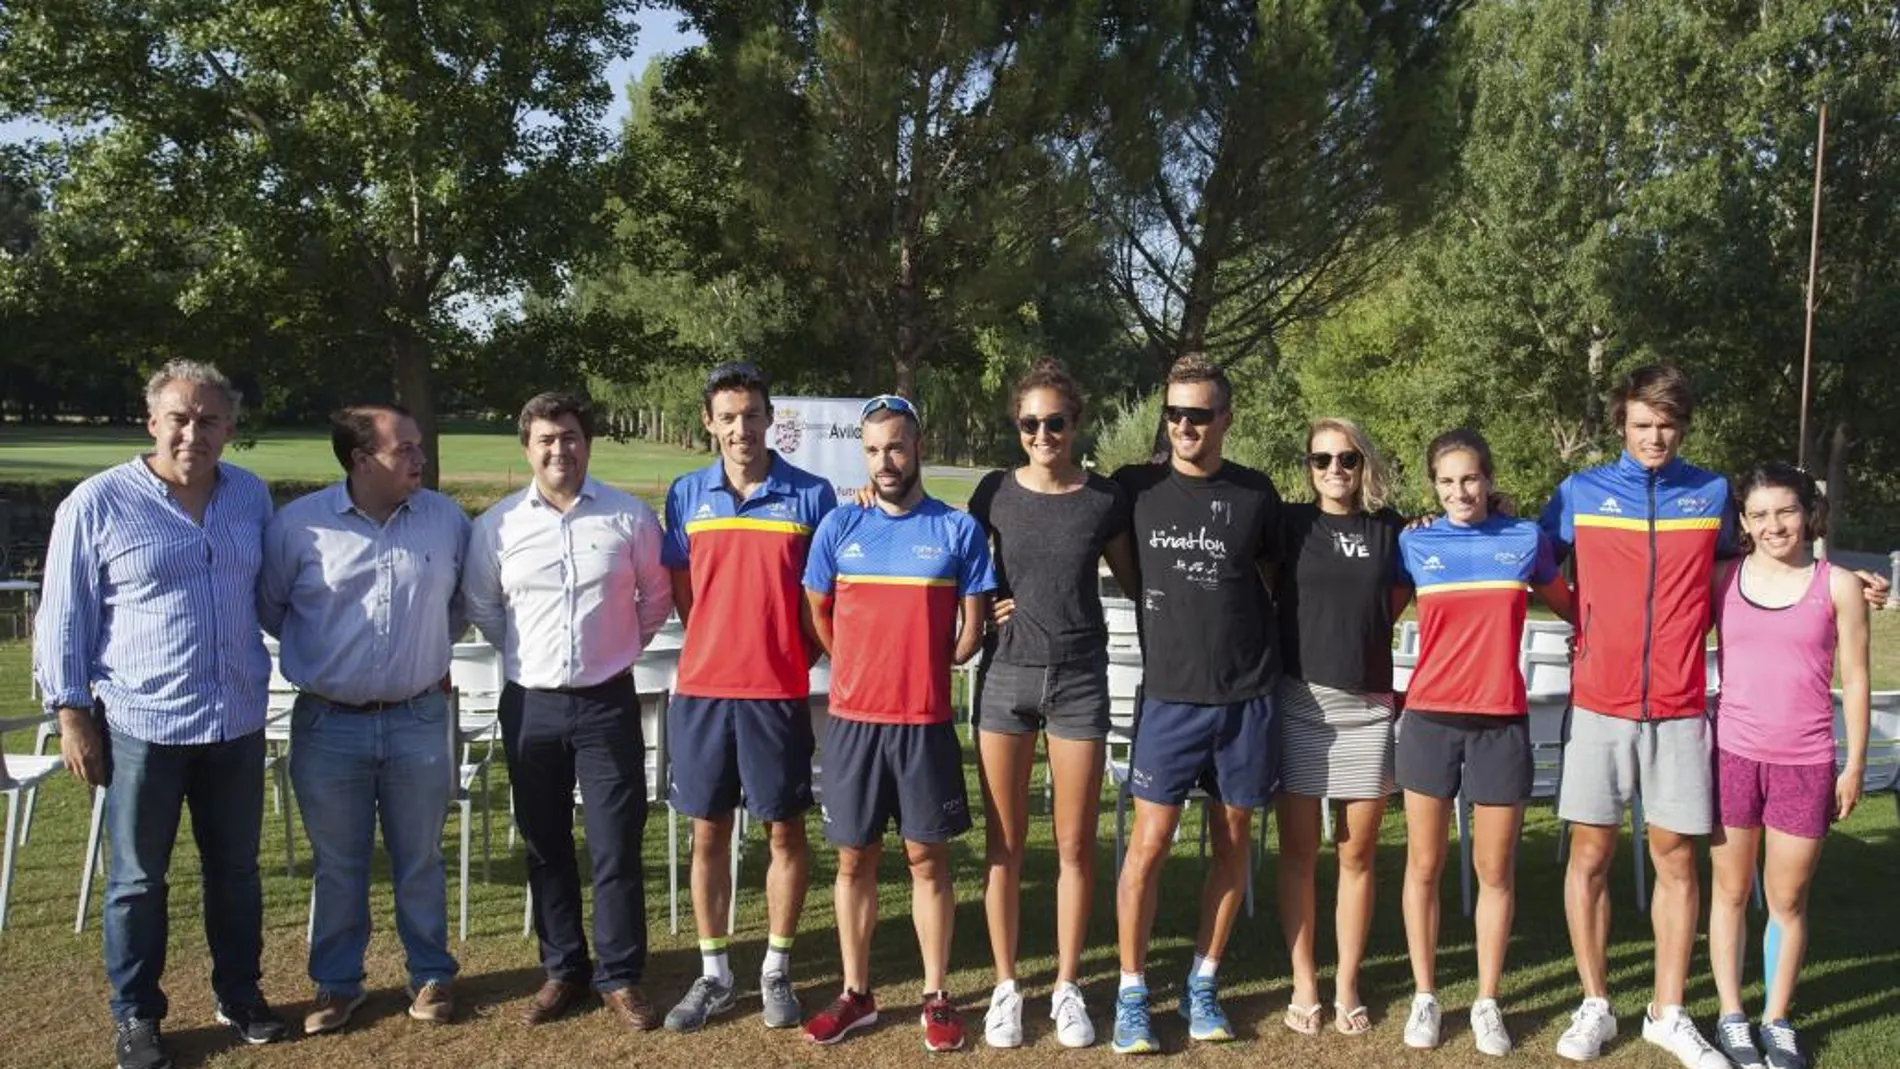 Miembros de la Selección Nacional de Triatlón posan junto a representantes de la Diputación de Ávila, en el complejo deportivo y de ocio de Naturávila donde están concentrados para su preparación